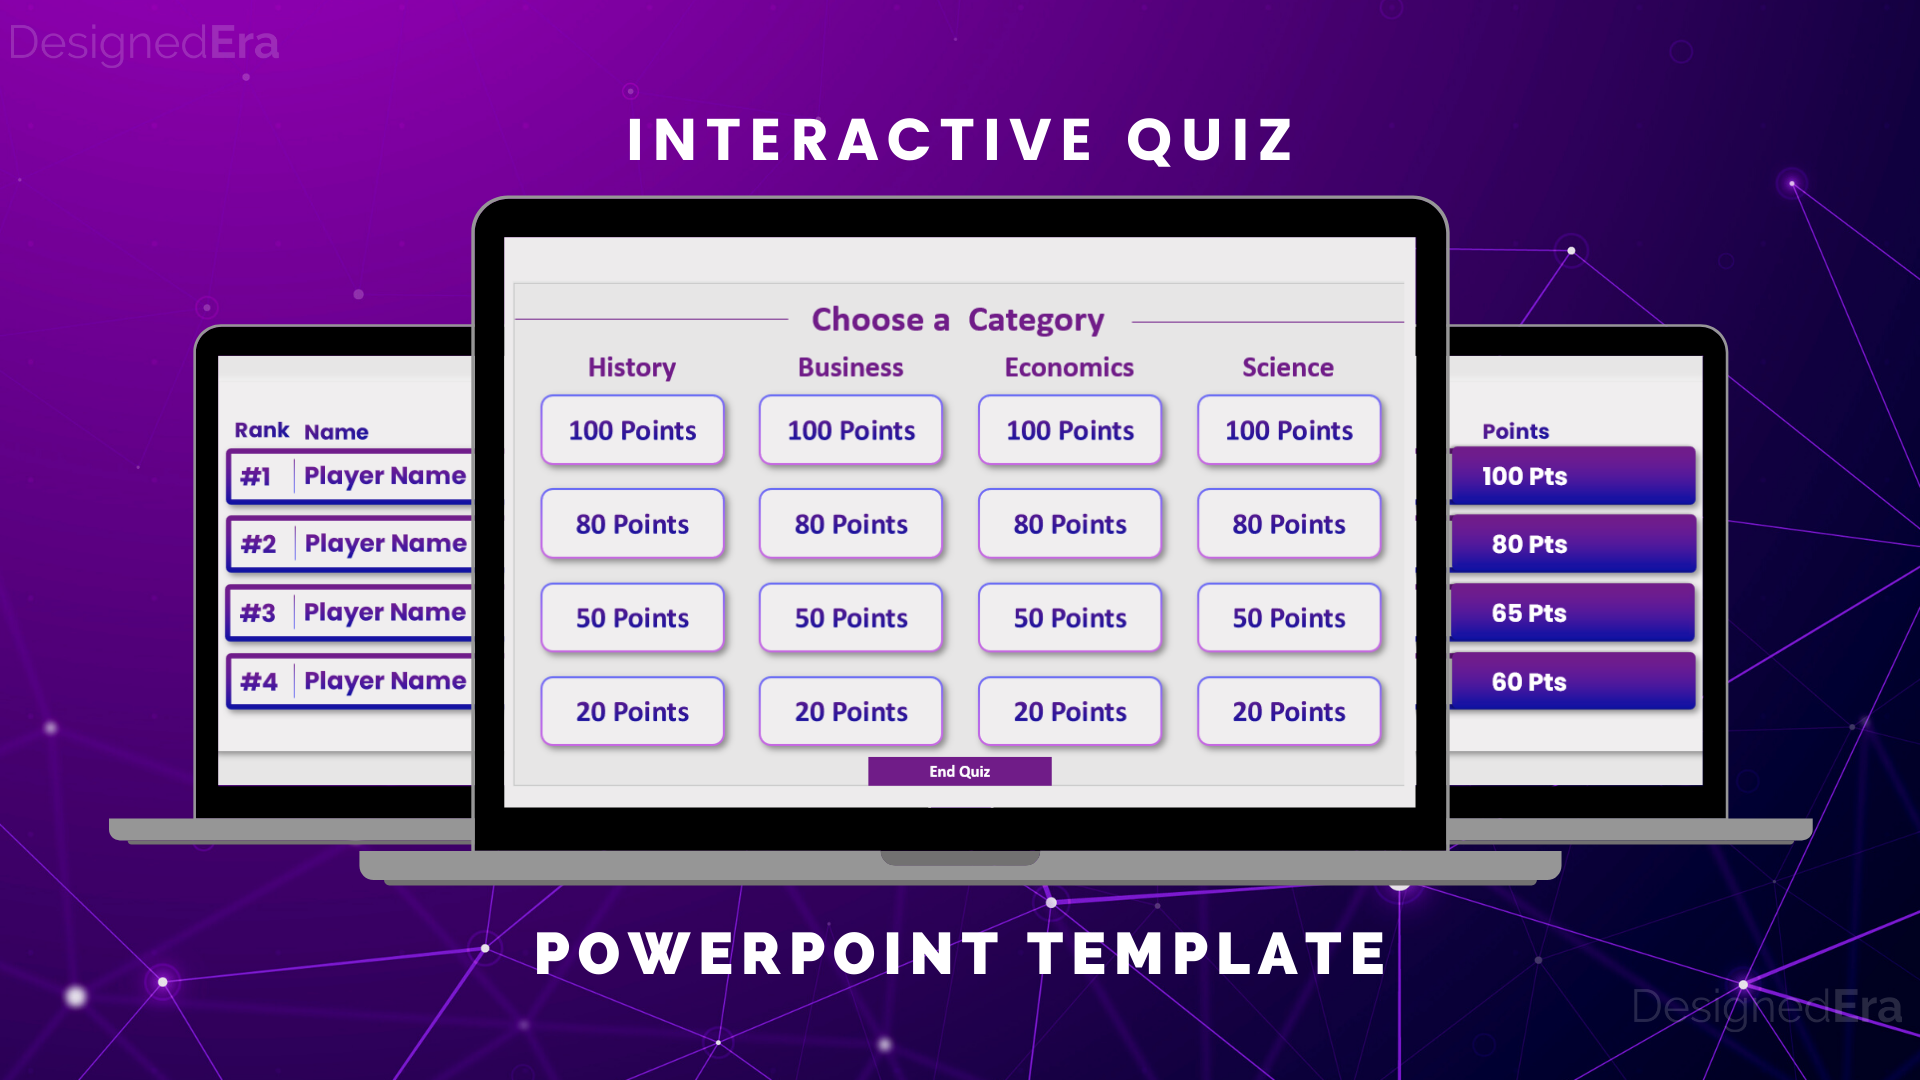 Interactive Quiz PowerPoint Template DesignedEra